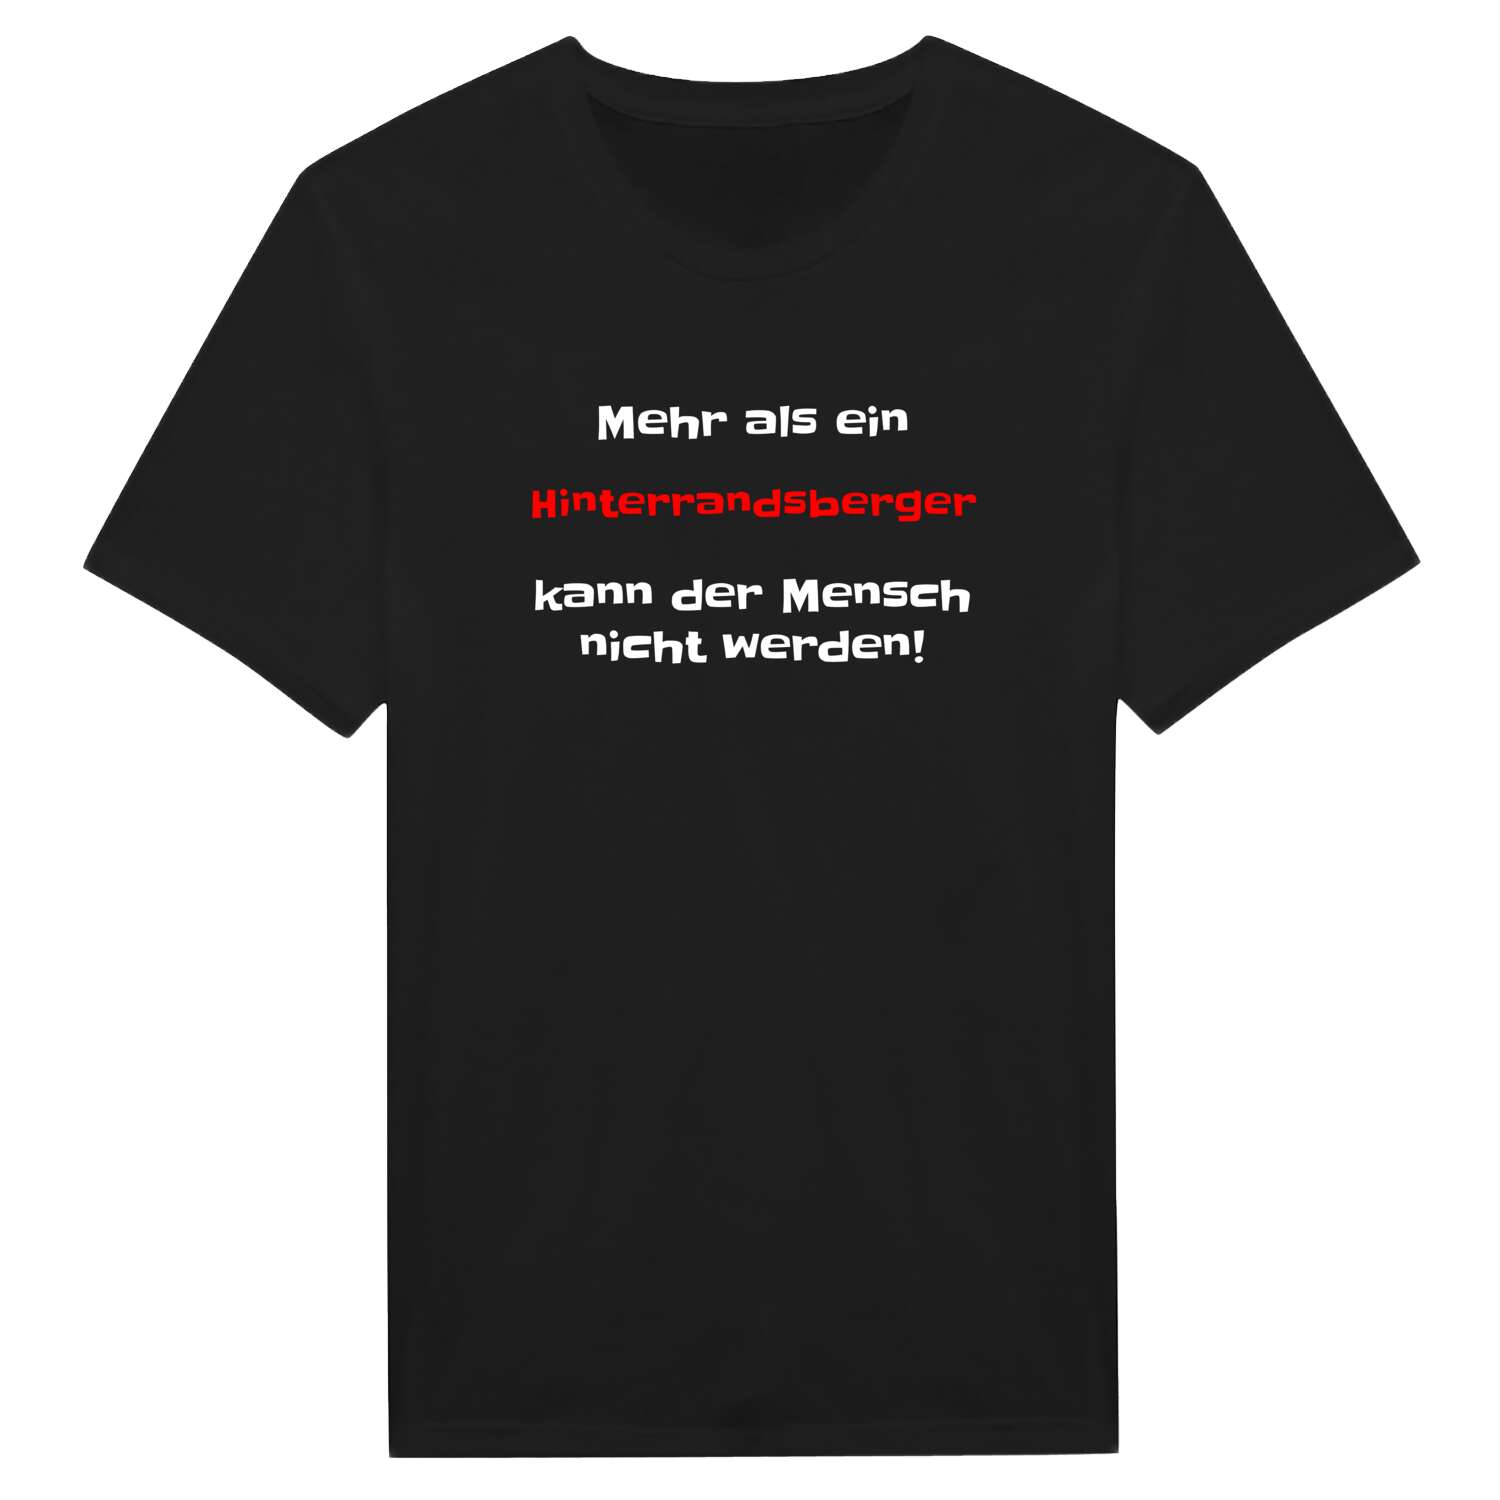 Hinterrandsberg T-Shirt »Mehr als ein«